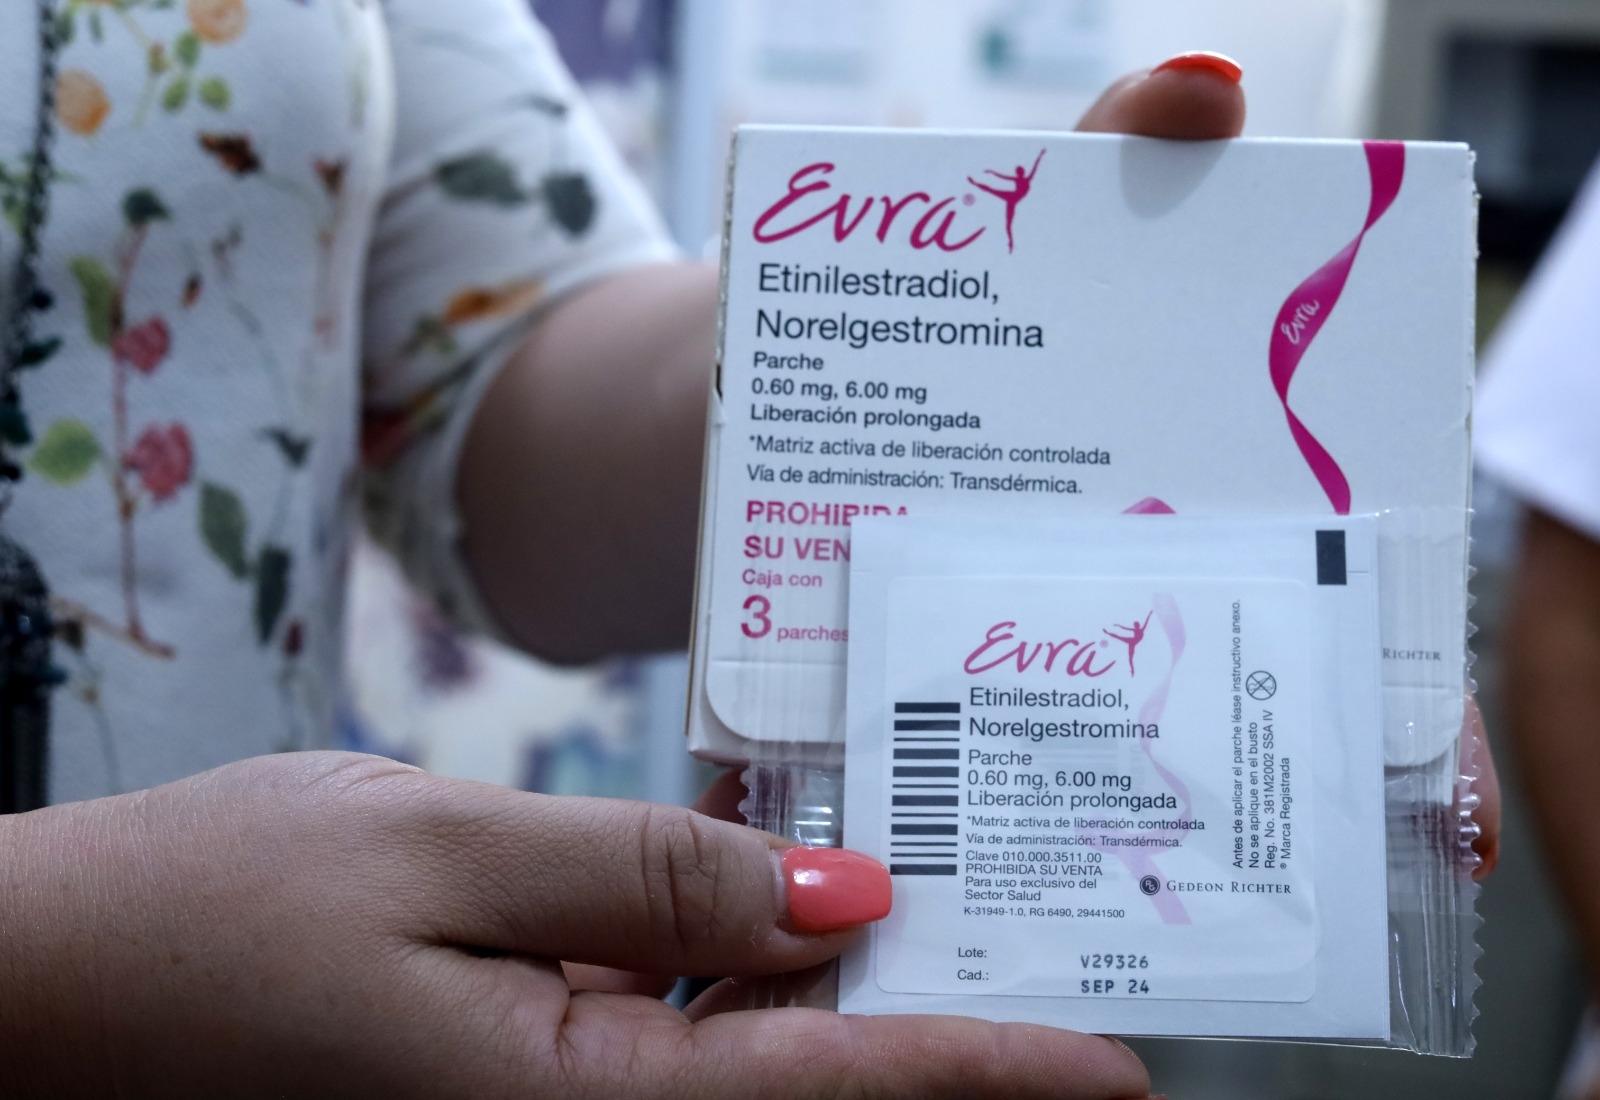 SSM brinda en sus centros de salud parches anticonceptivos gratuitos